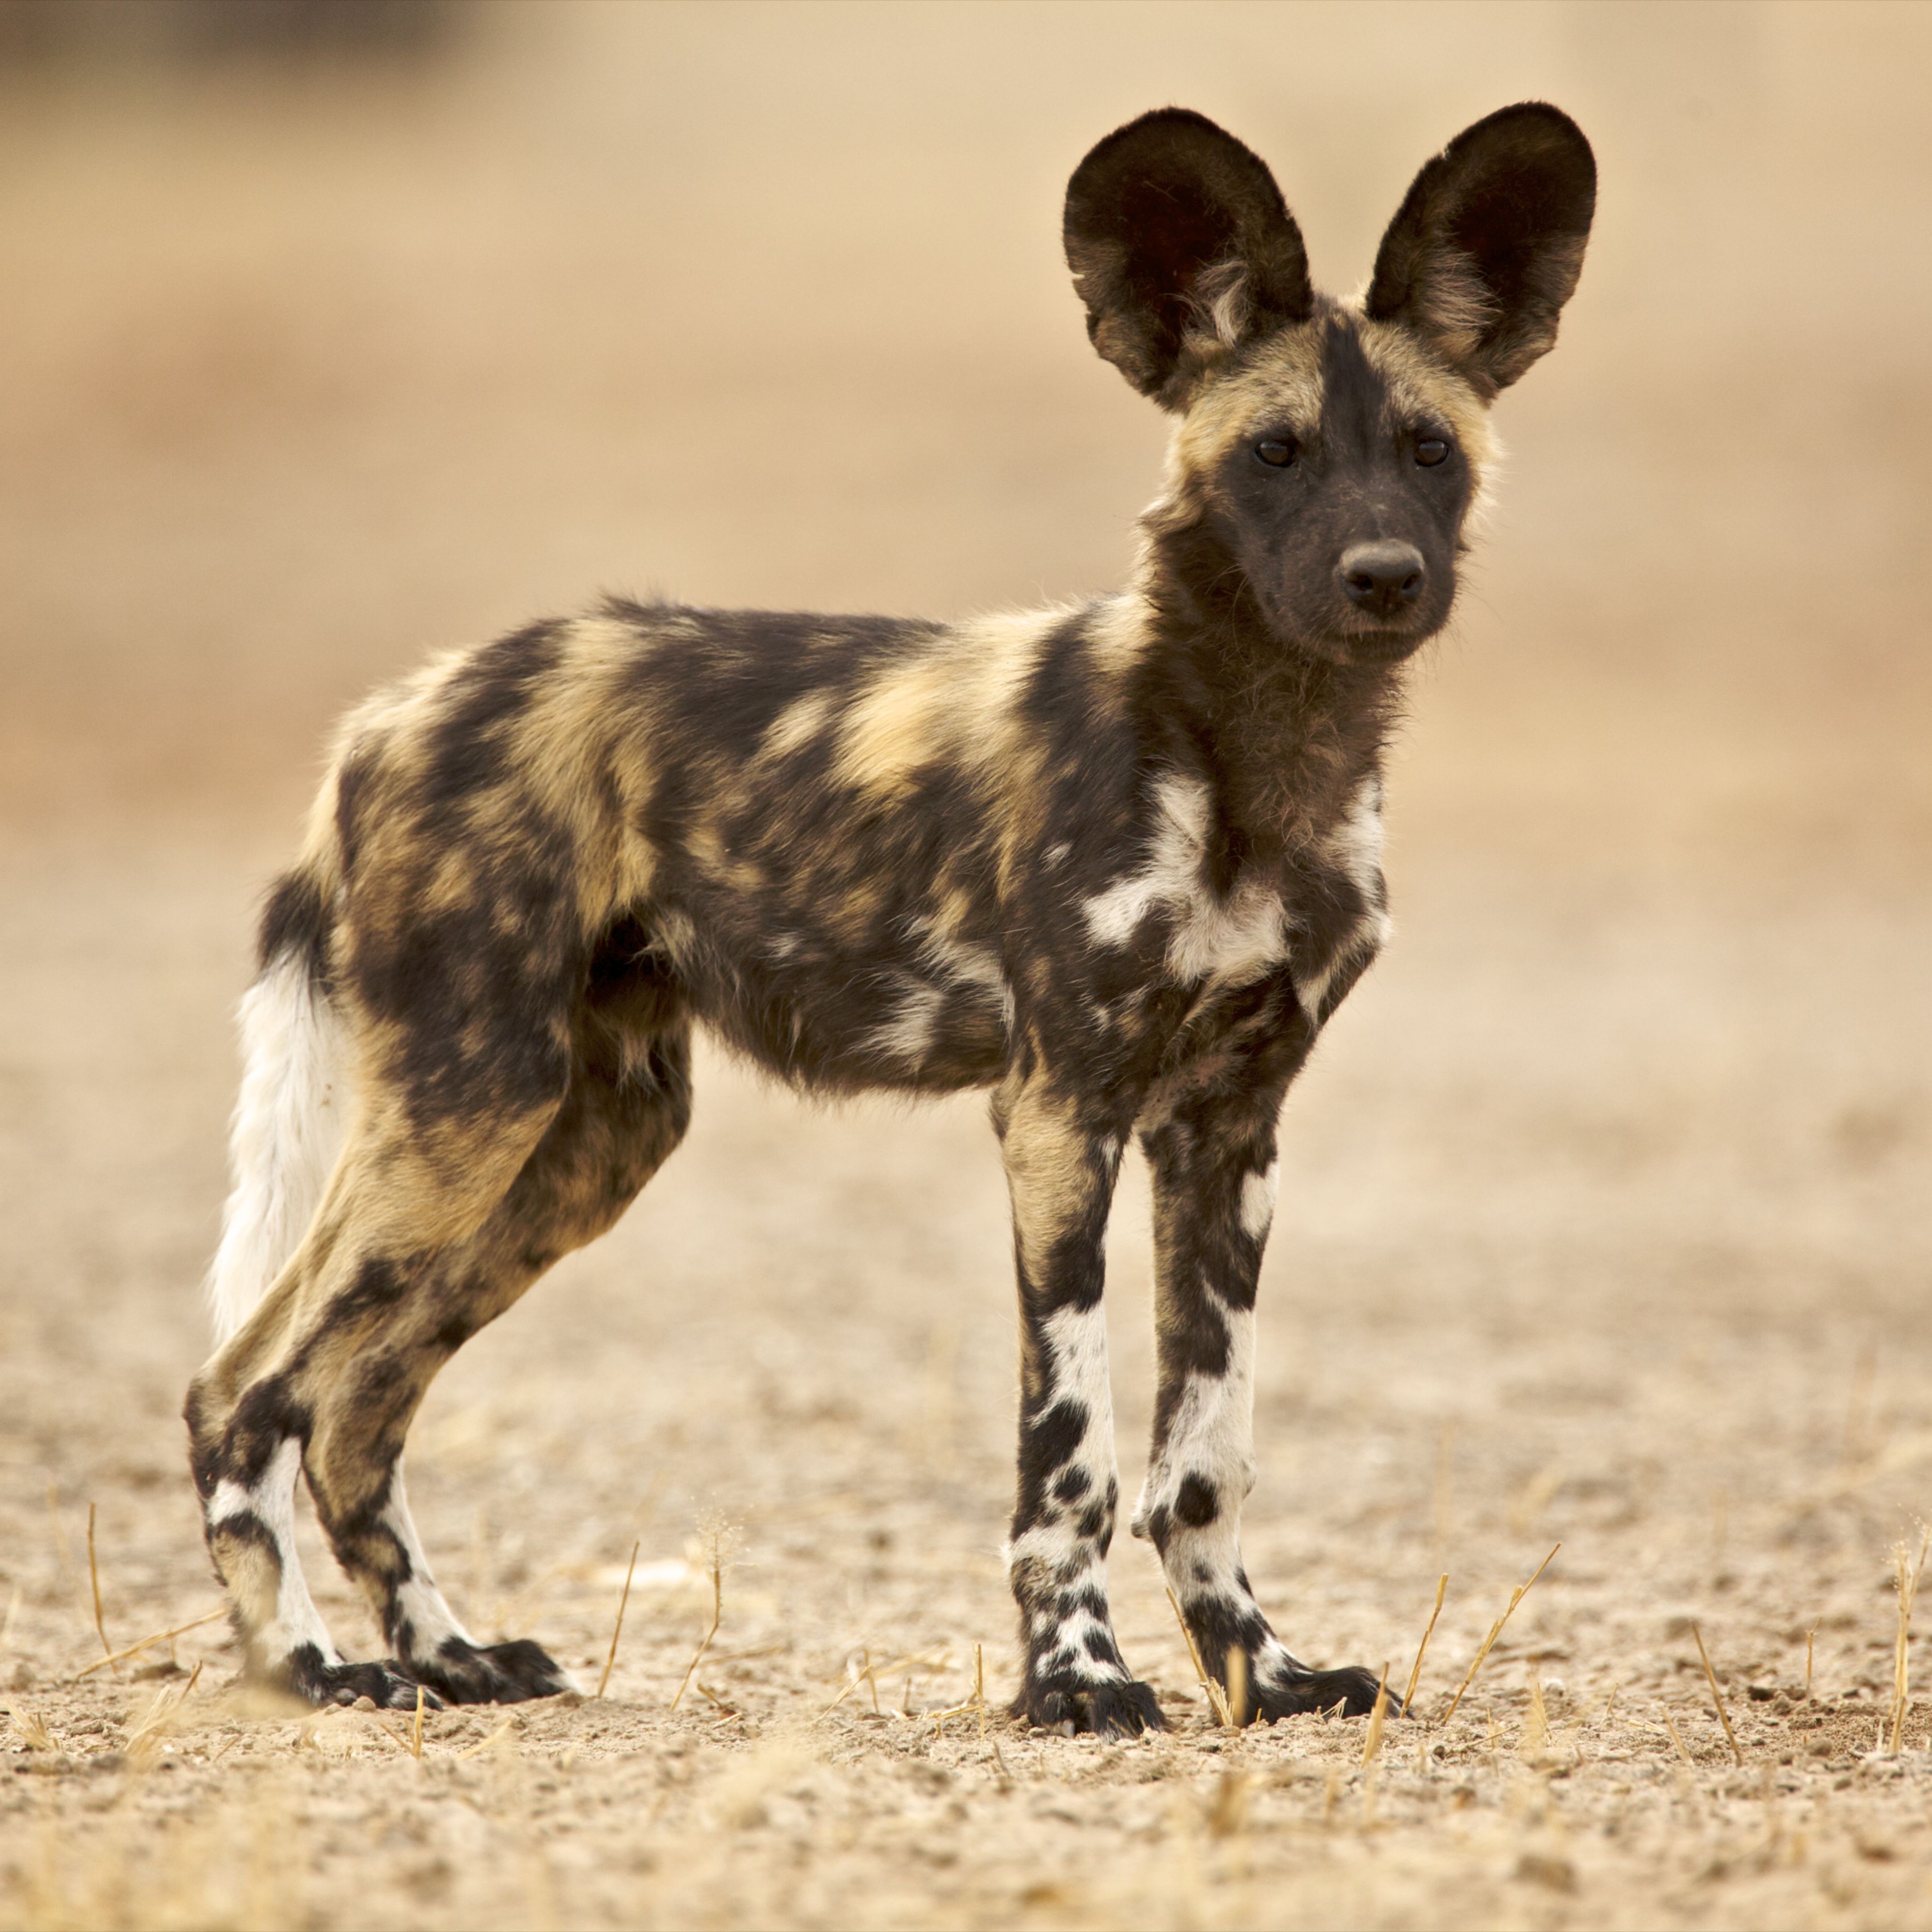 Гиеновидная собака - описание животного, охота и фото щенков, где обитает и чем питается